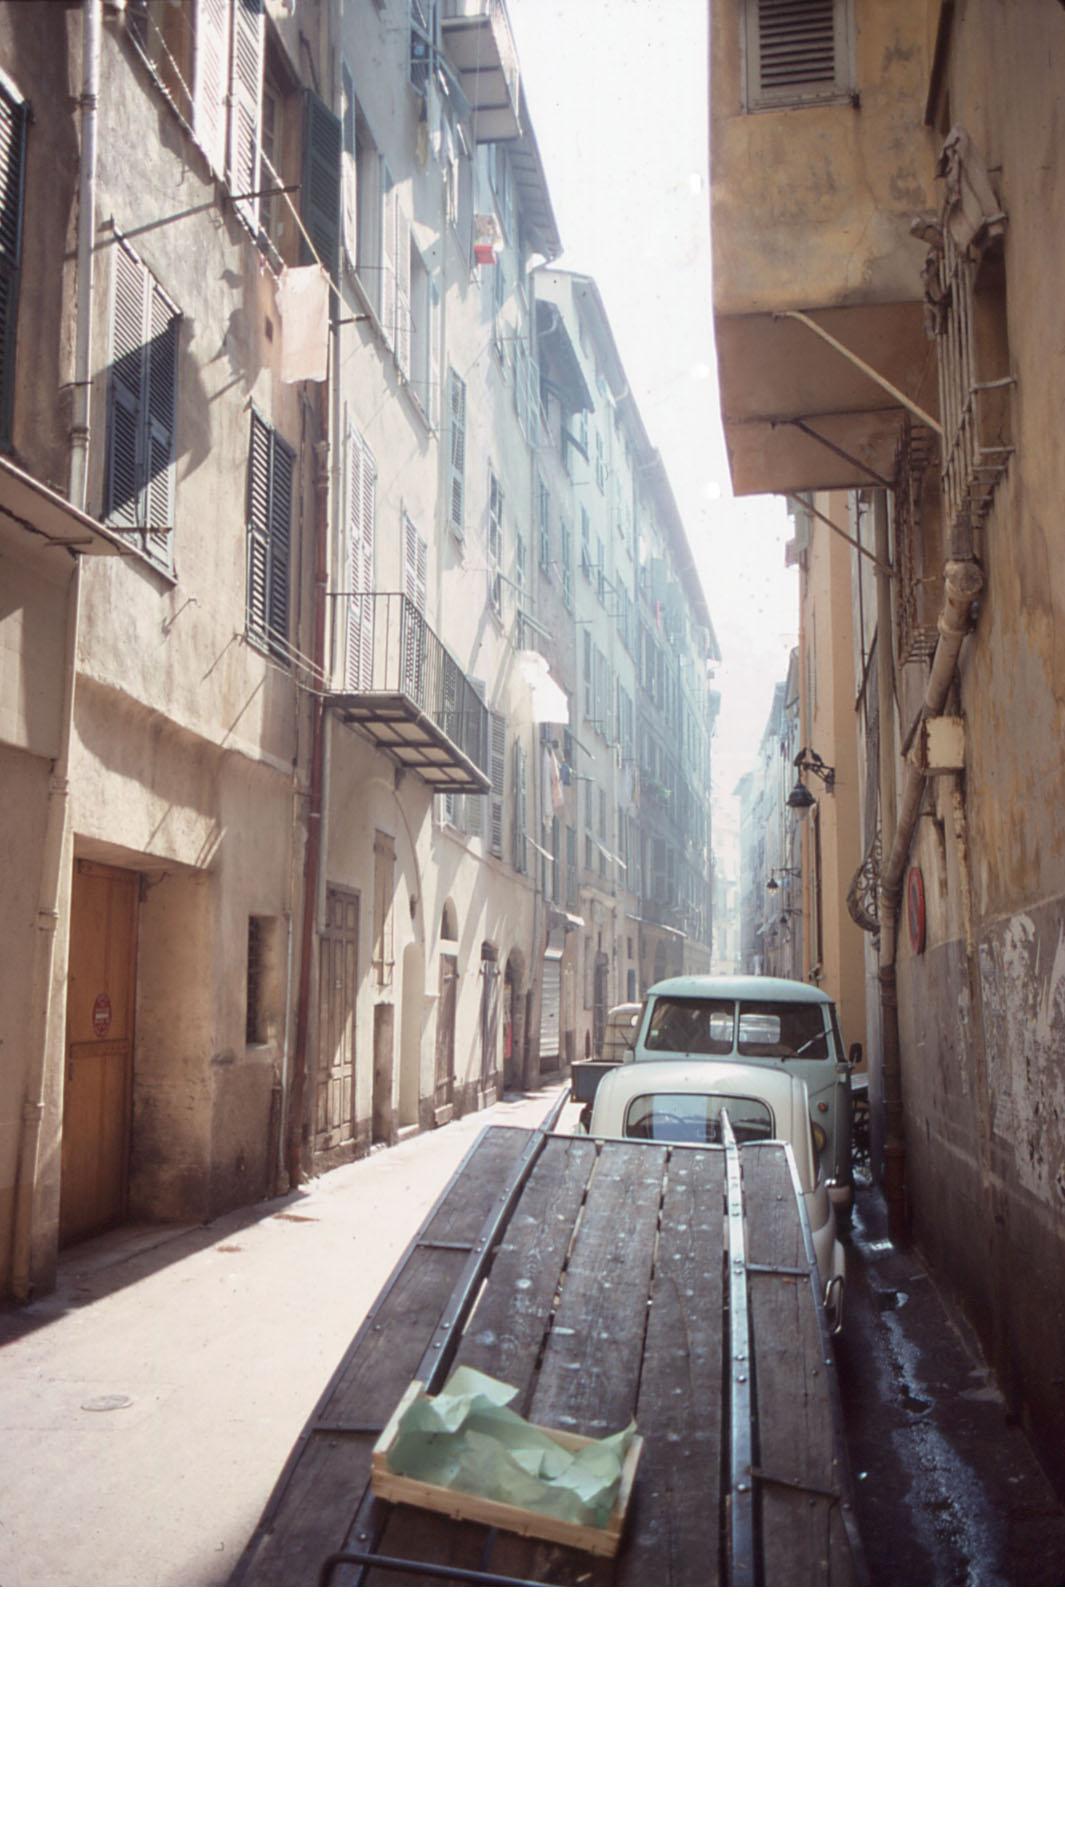 1 - rue Barillerie, 1979